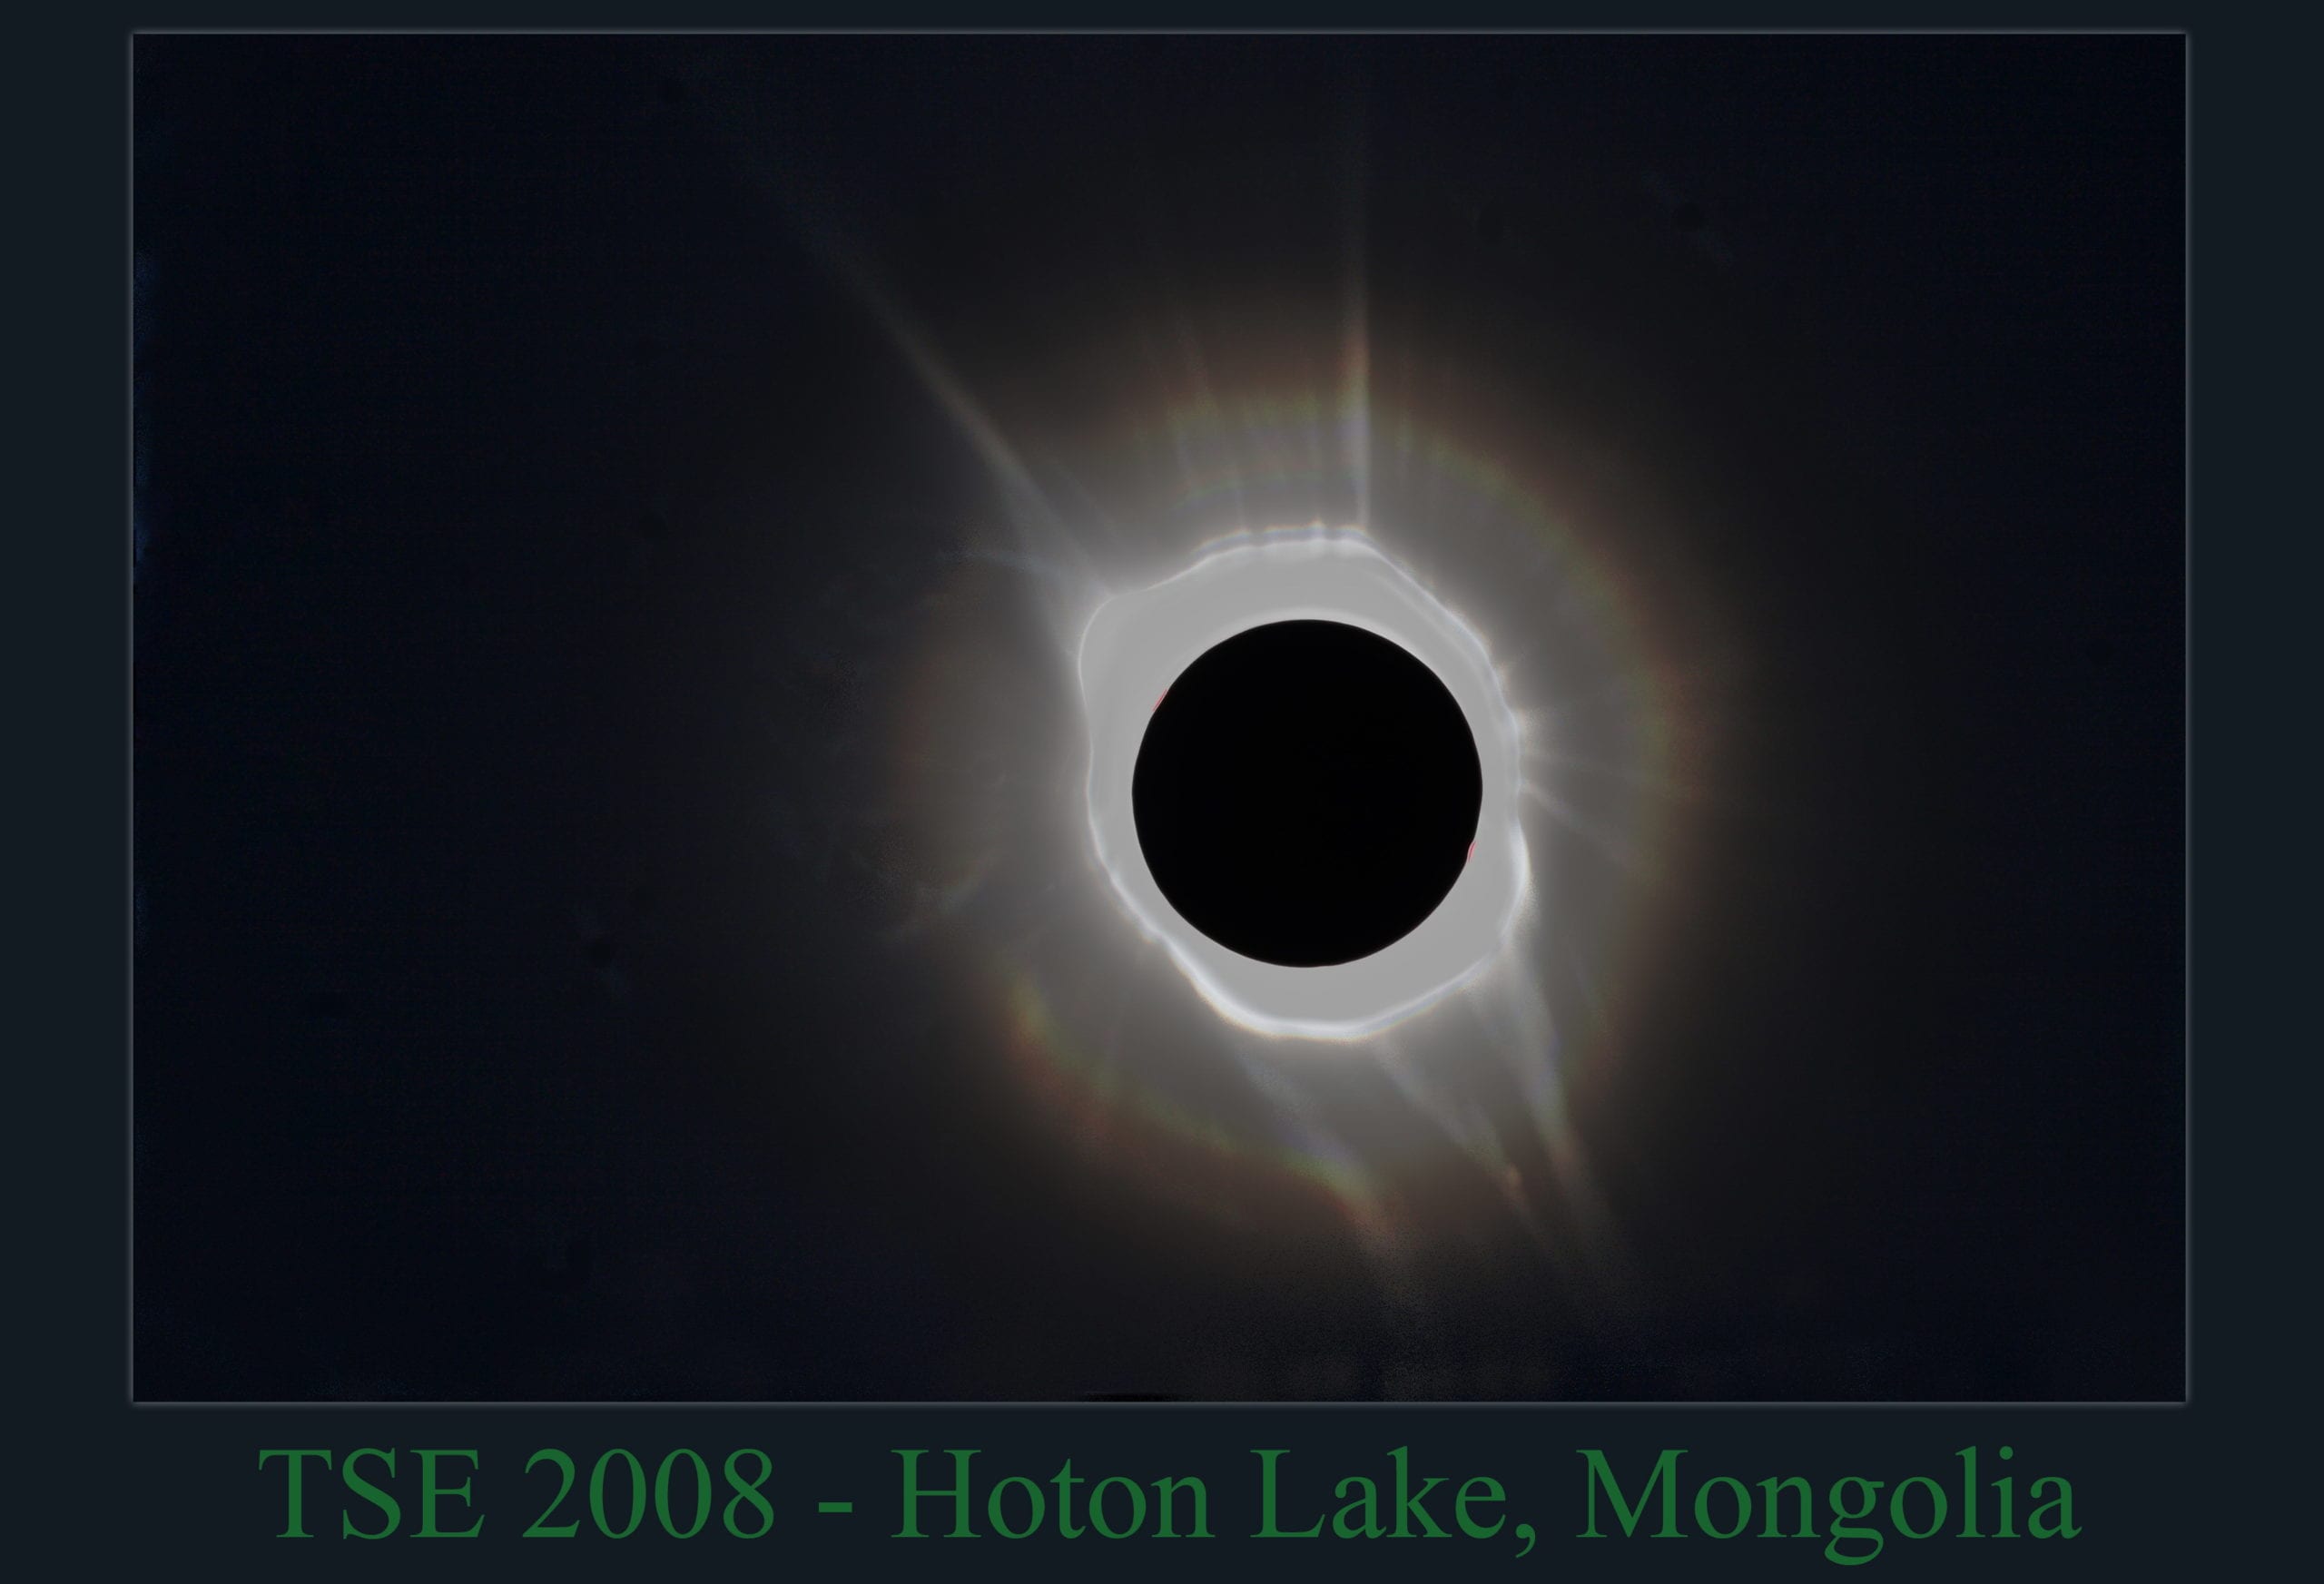 TSE 2008-Eclipse Mongolia Hoton Lake